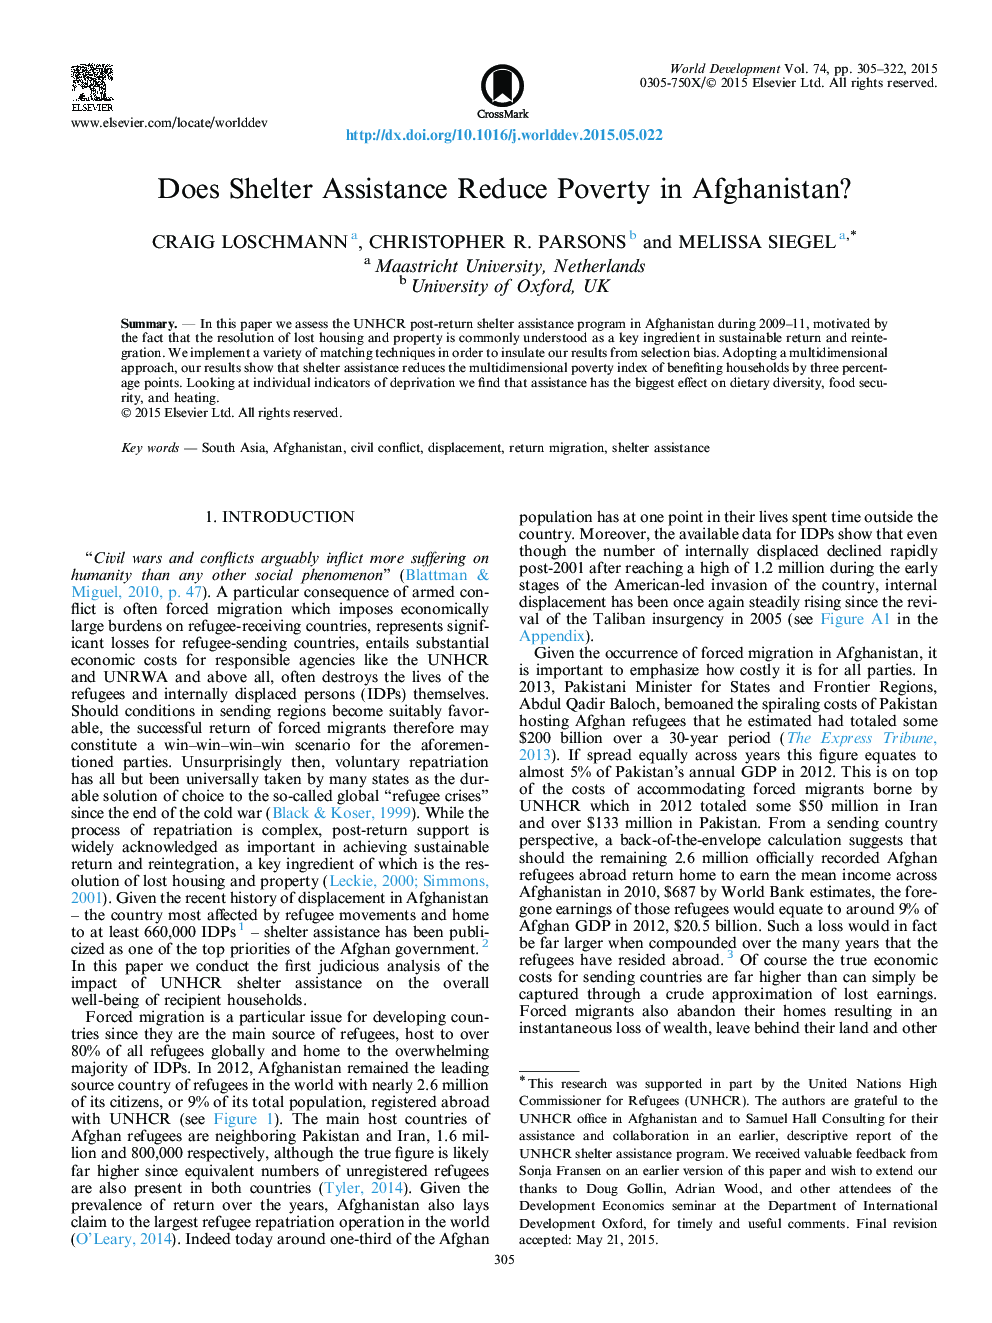 آیا کمک پناهگاه کاهش فقر در افغانستان را کاهش می دهد؟ 